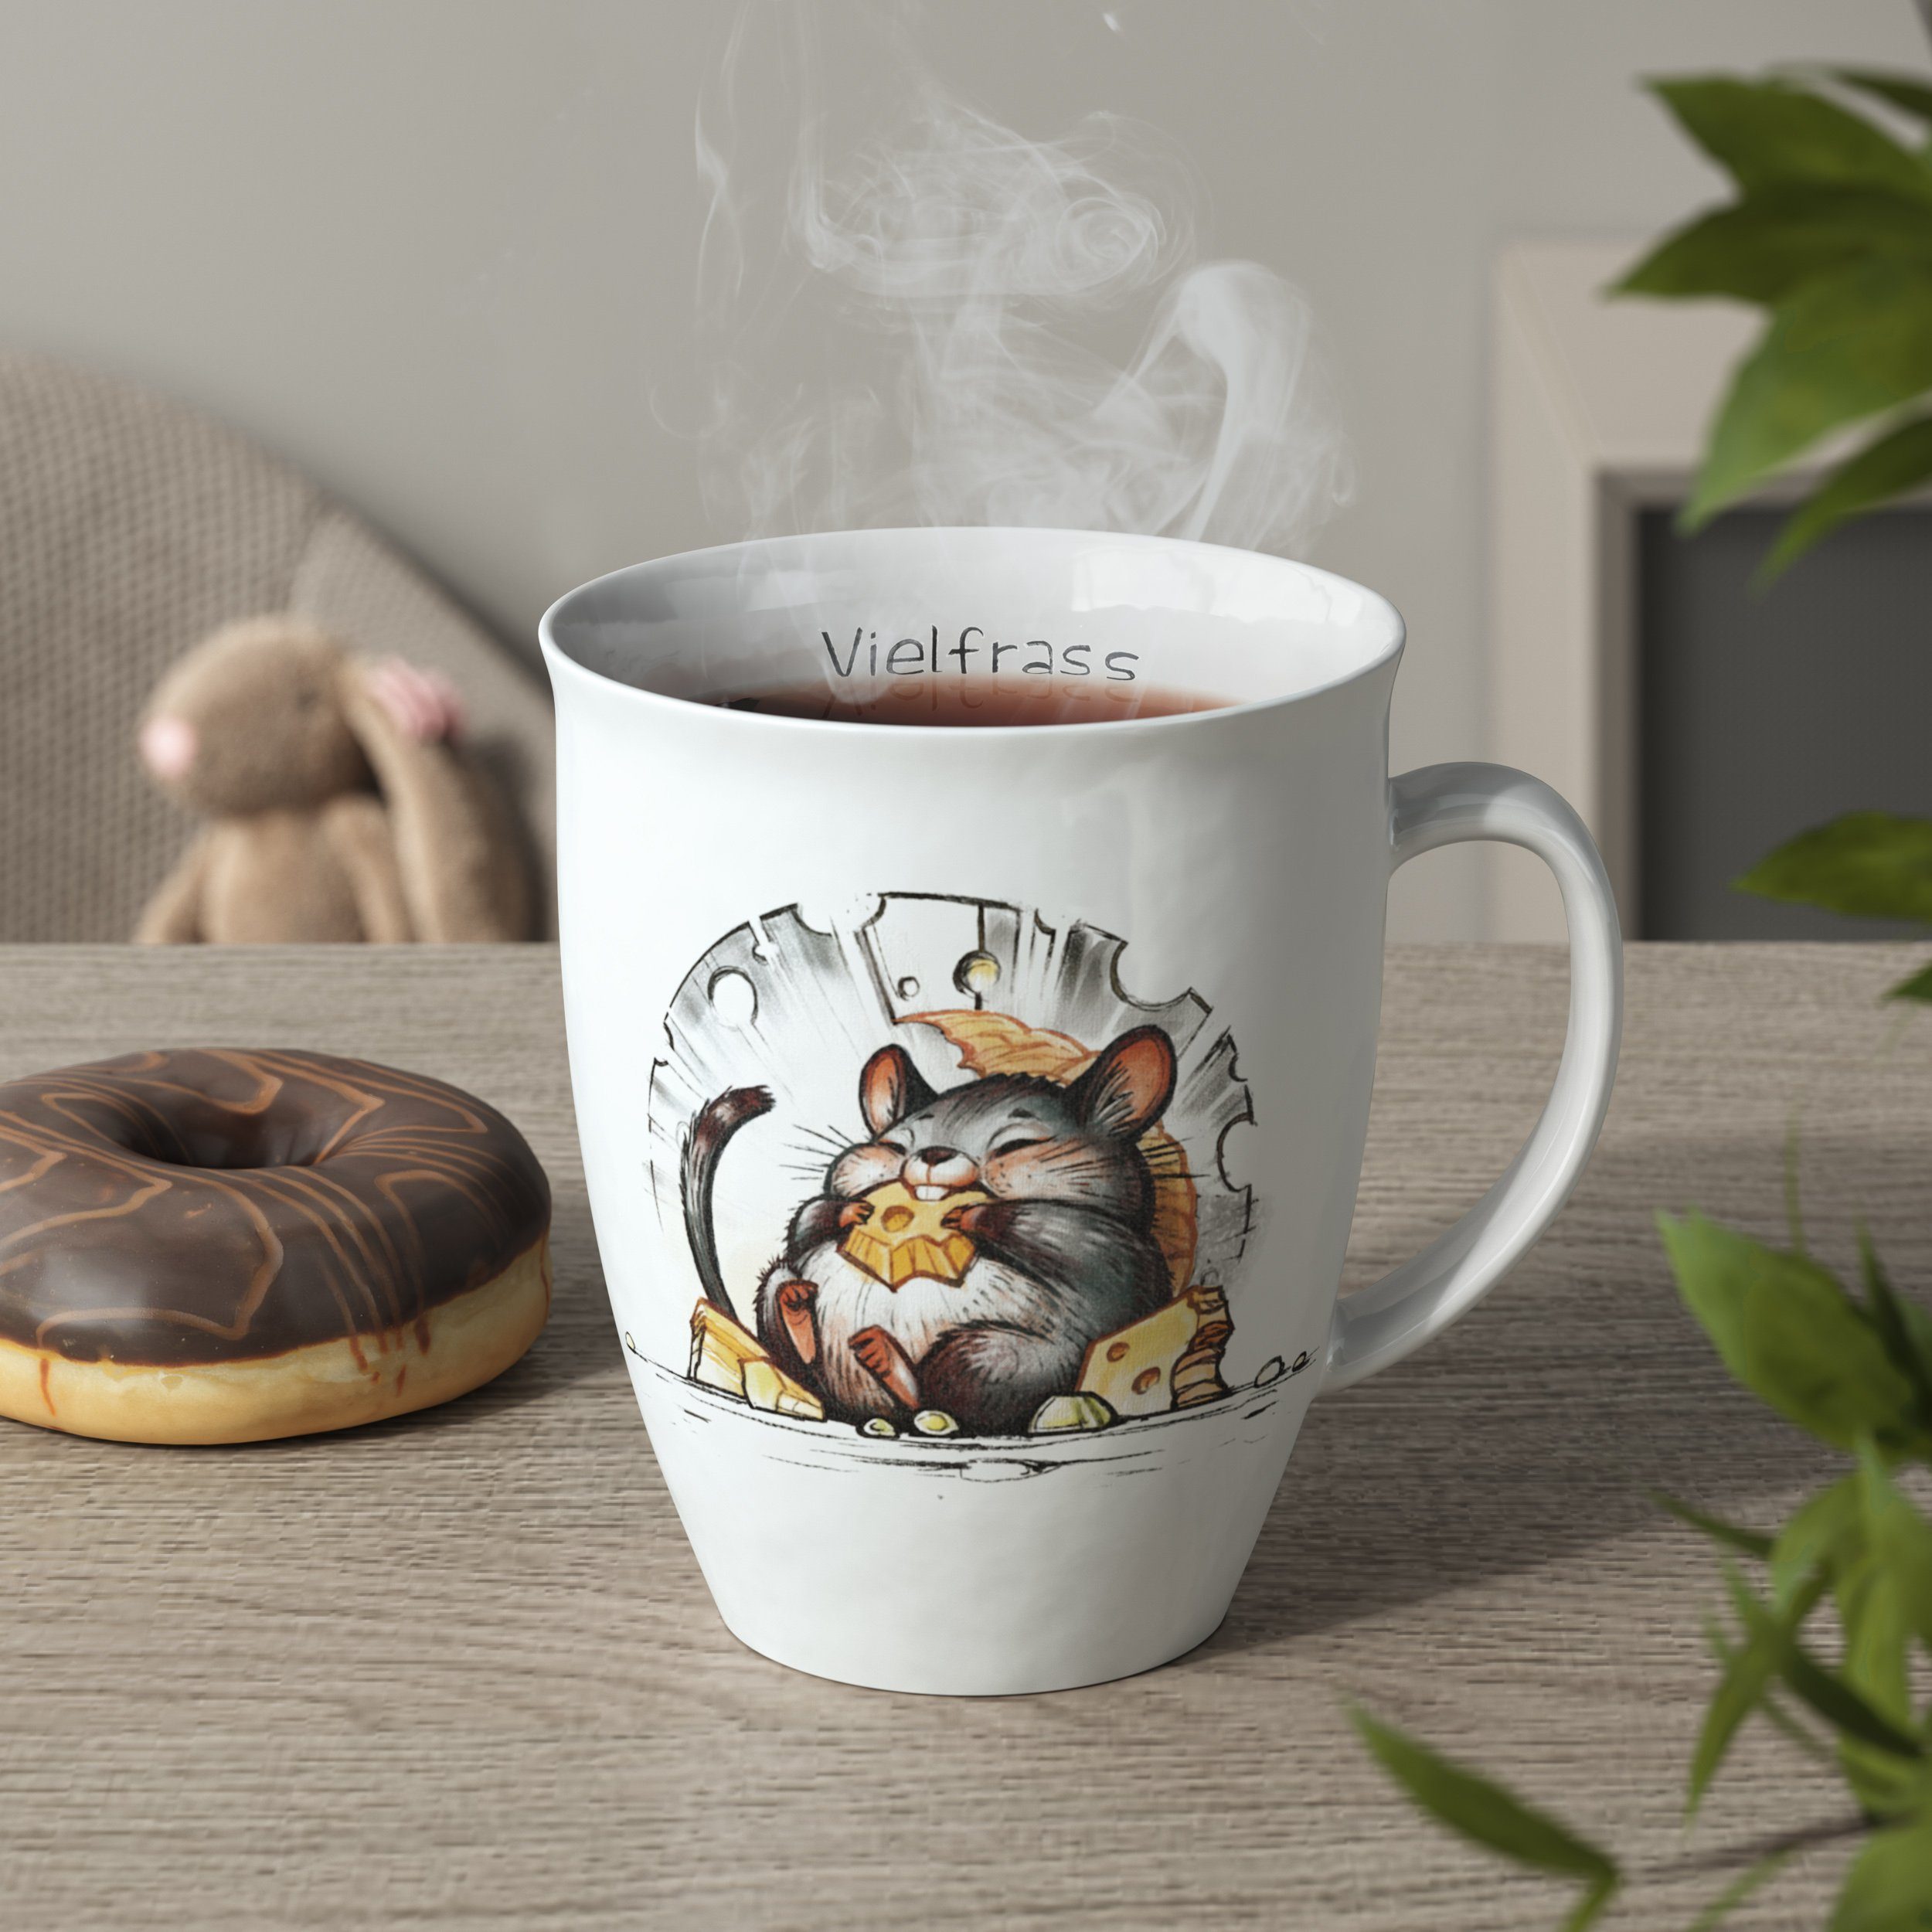 Kaffee Motiv Becher Tasse Maus Vielfraß Motiv, mit für Tee mit Kaffeebecher Porzellan, L.E.R.D.93